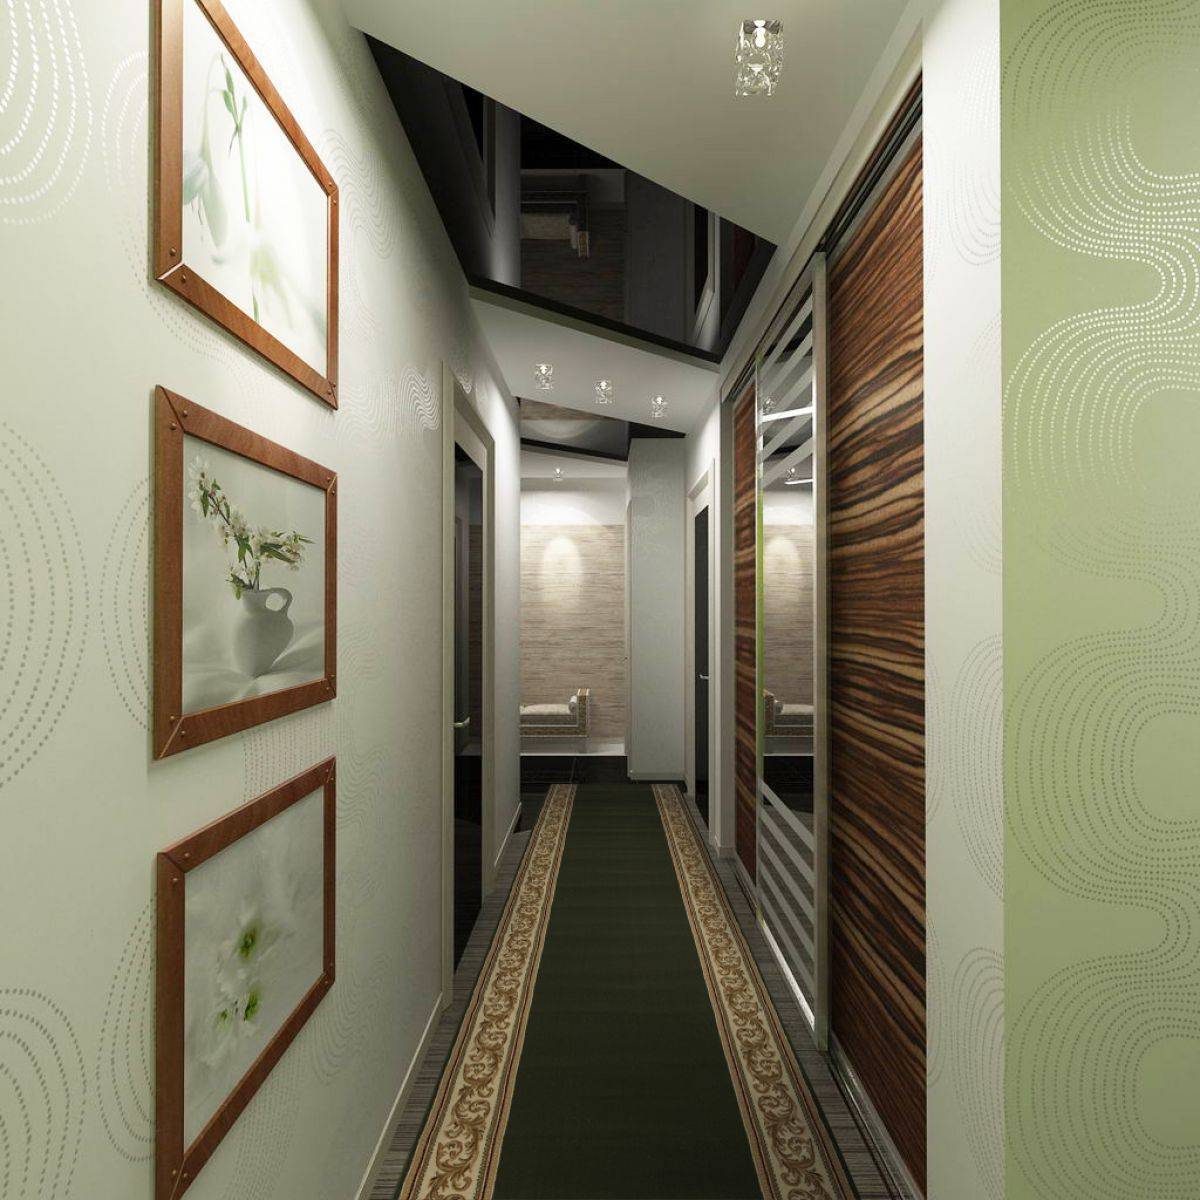 Обои в коридор (фото): как выбрать для маленького, узкого помещения